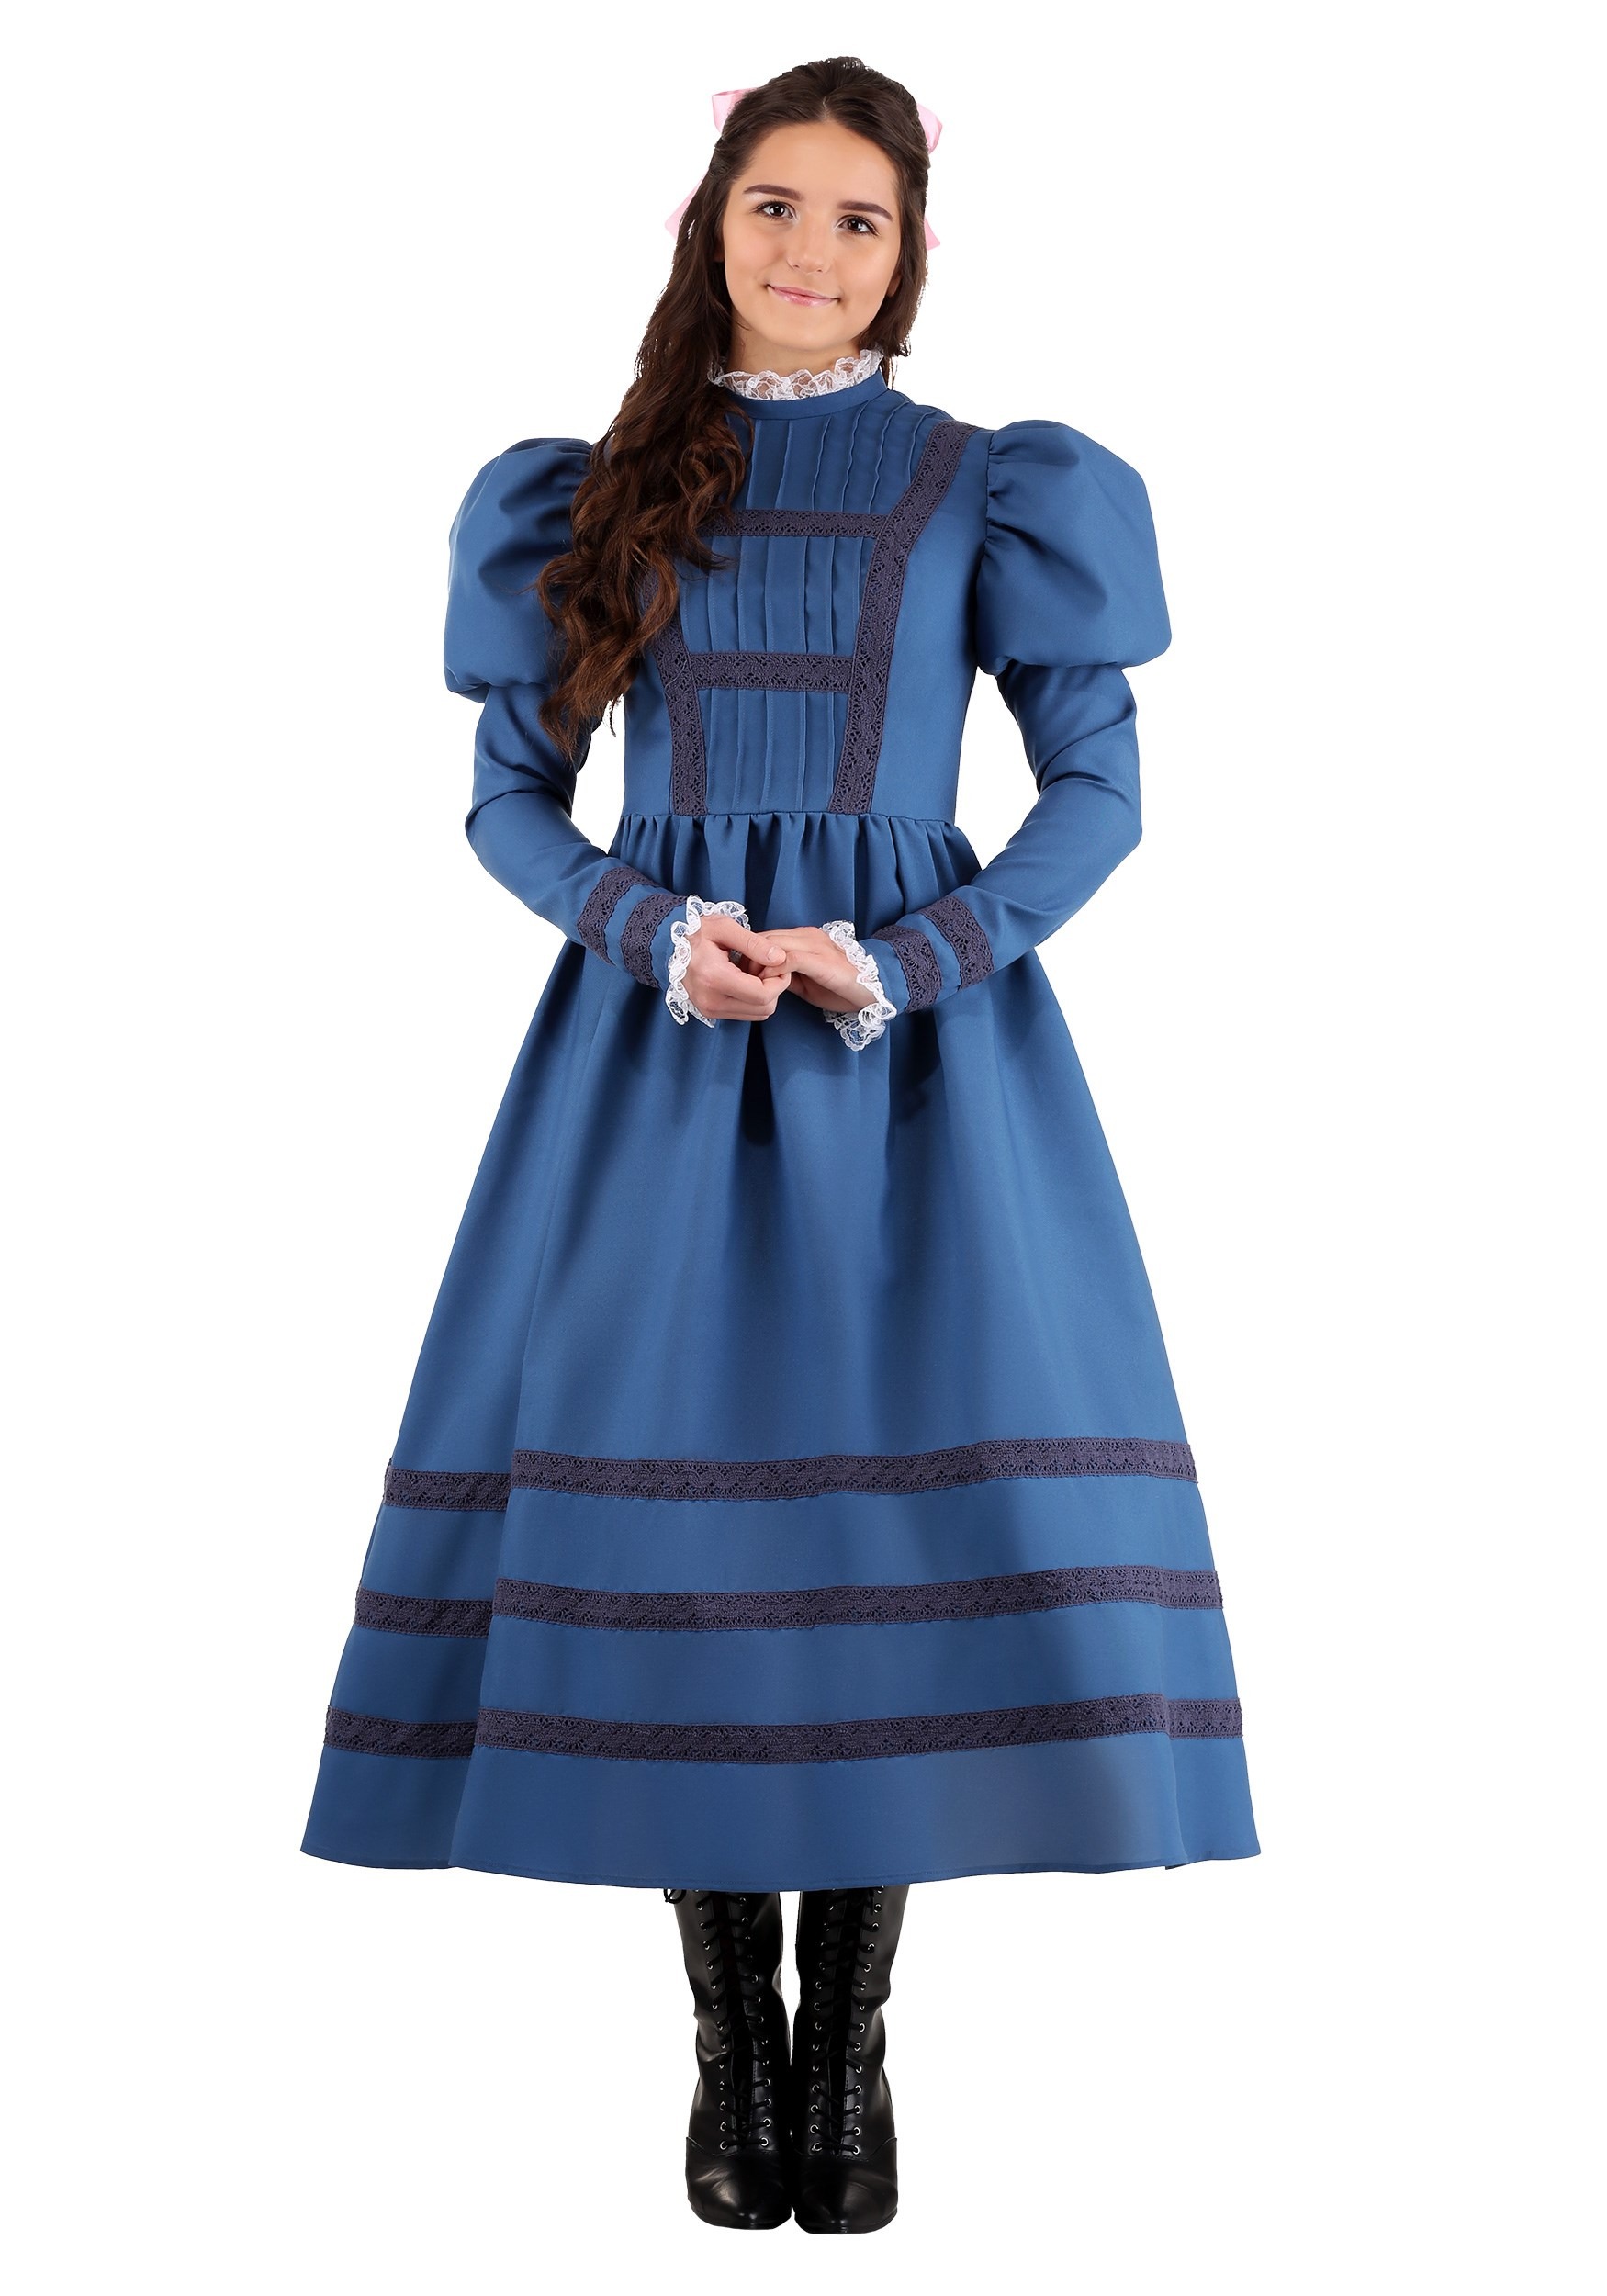 Helen Keller Fancy Dress Costume For Women